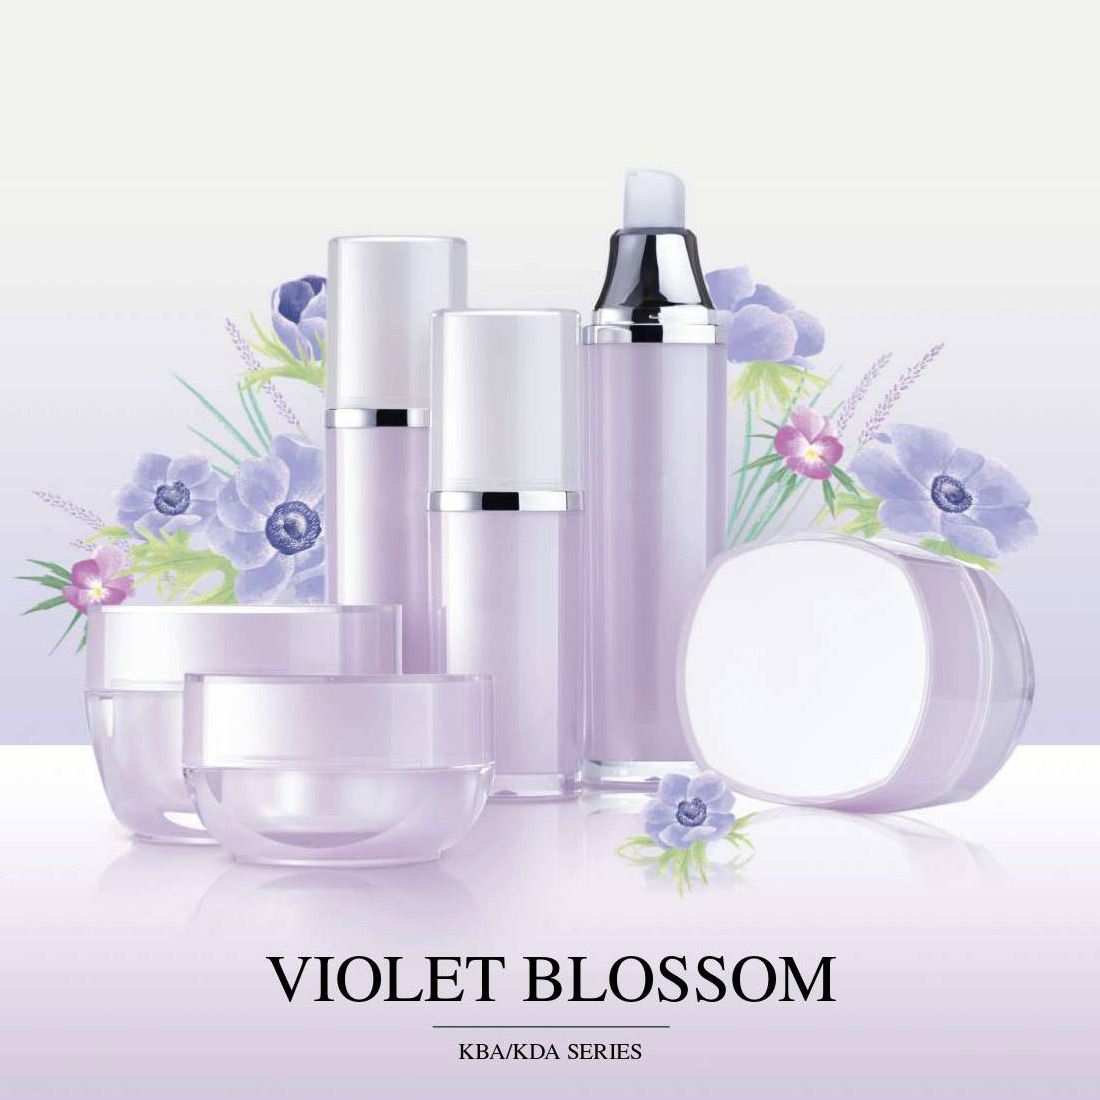 Violet Blossom (embalagem acrílica luxuosa para cosméticos e cuidados com a pele) Série KBA e KDA